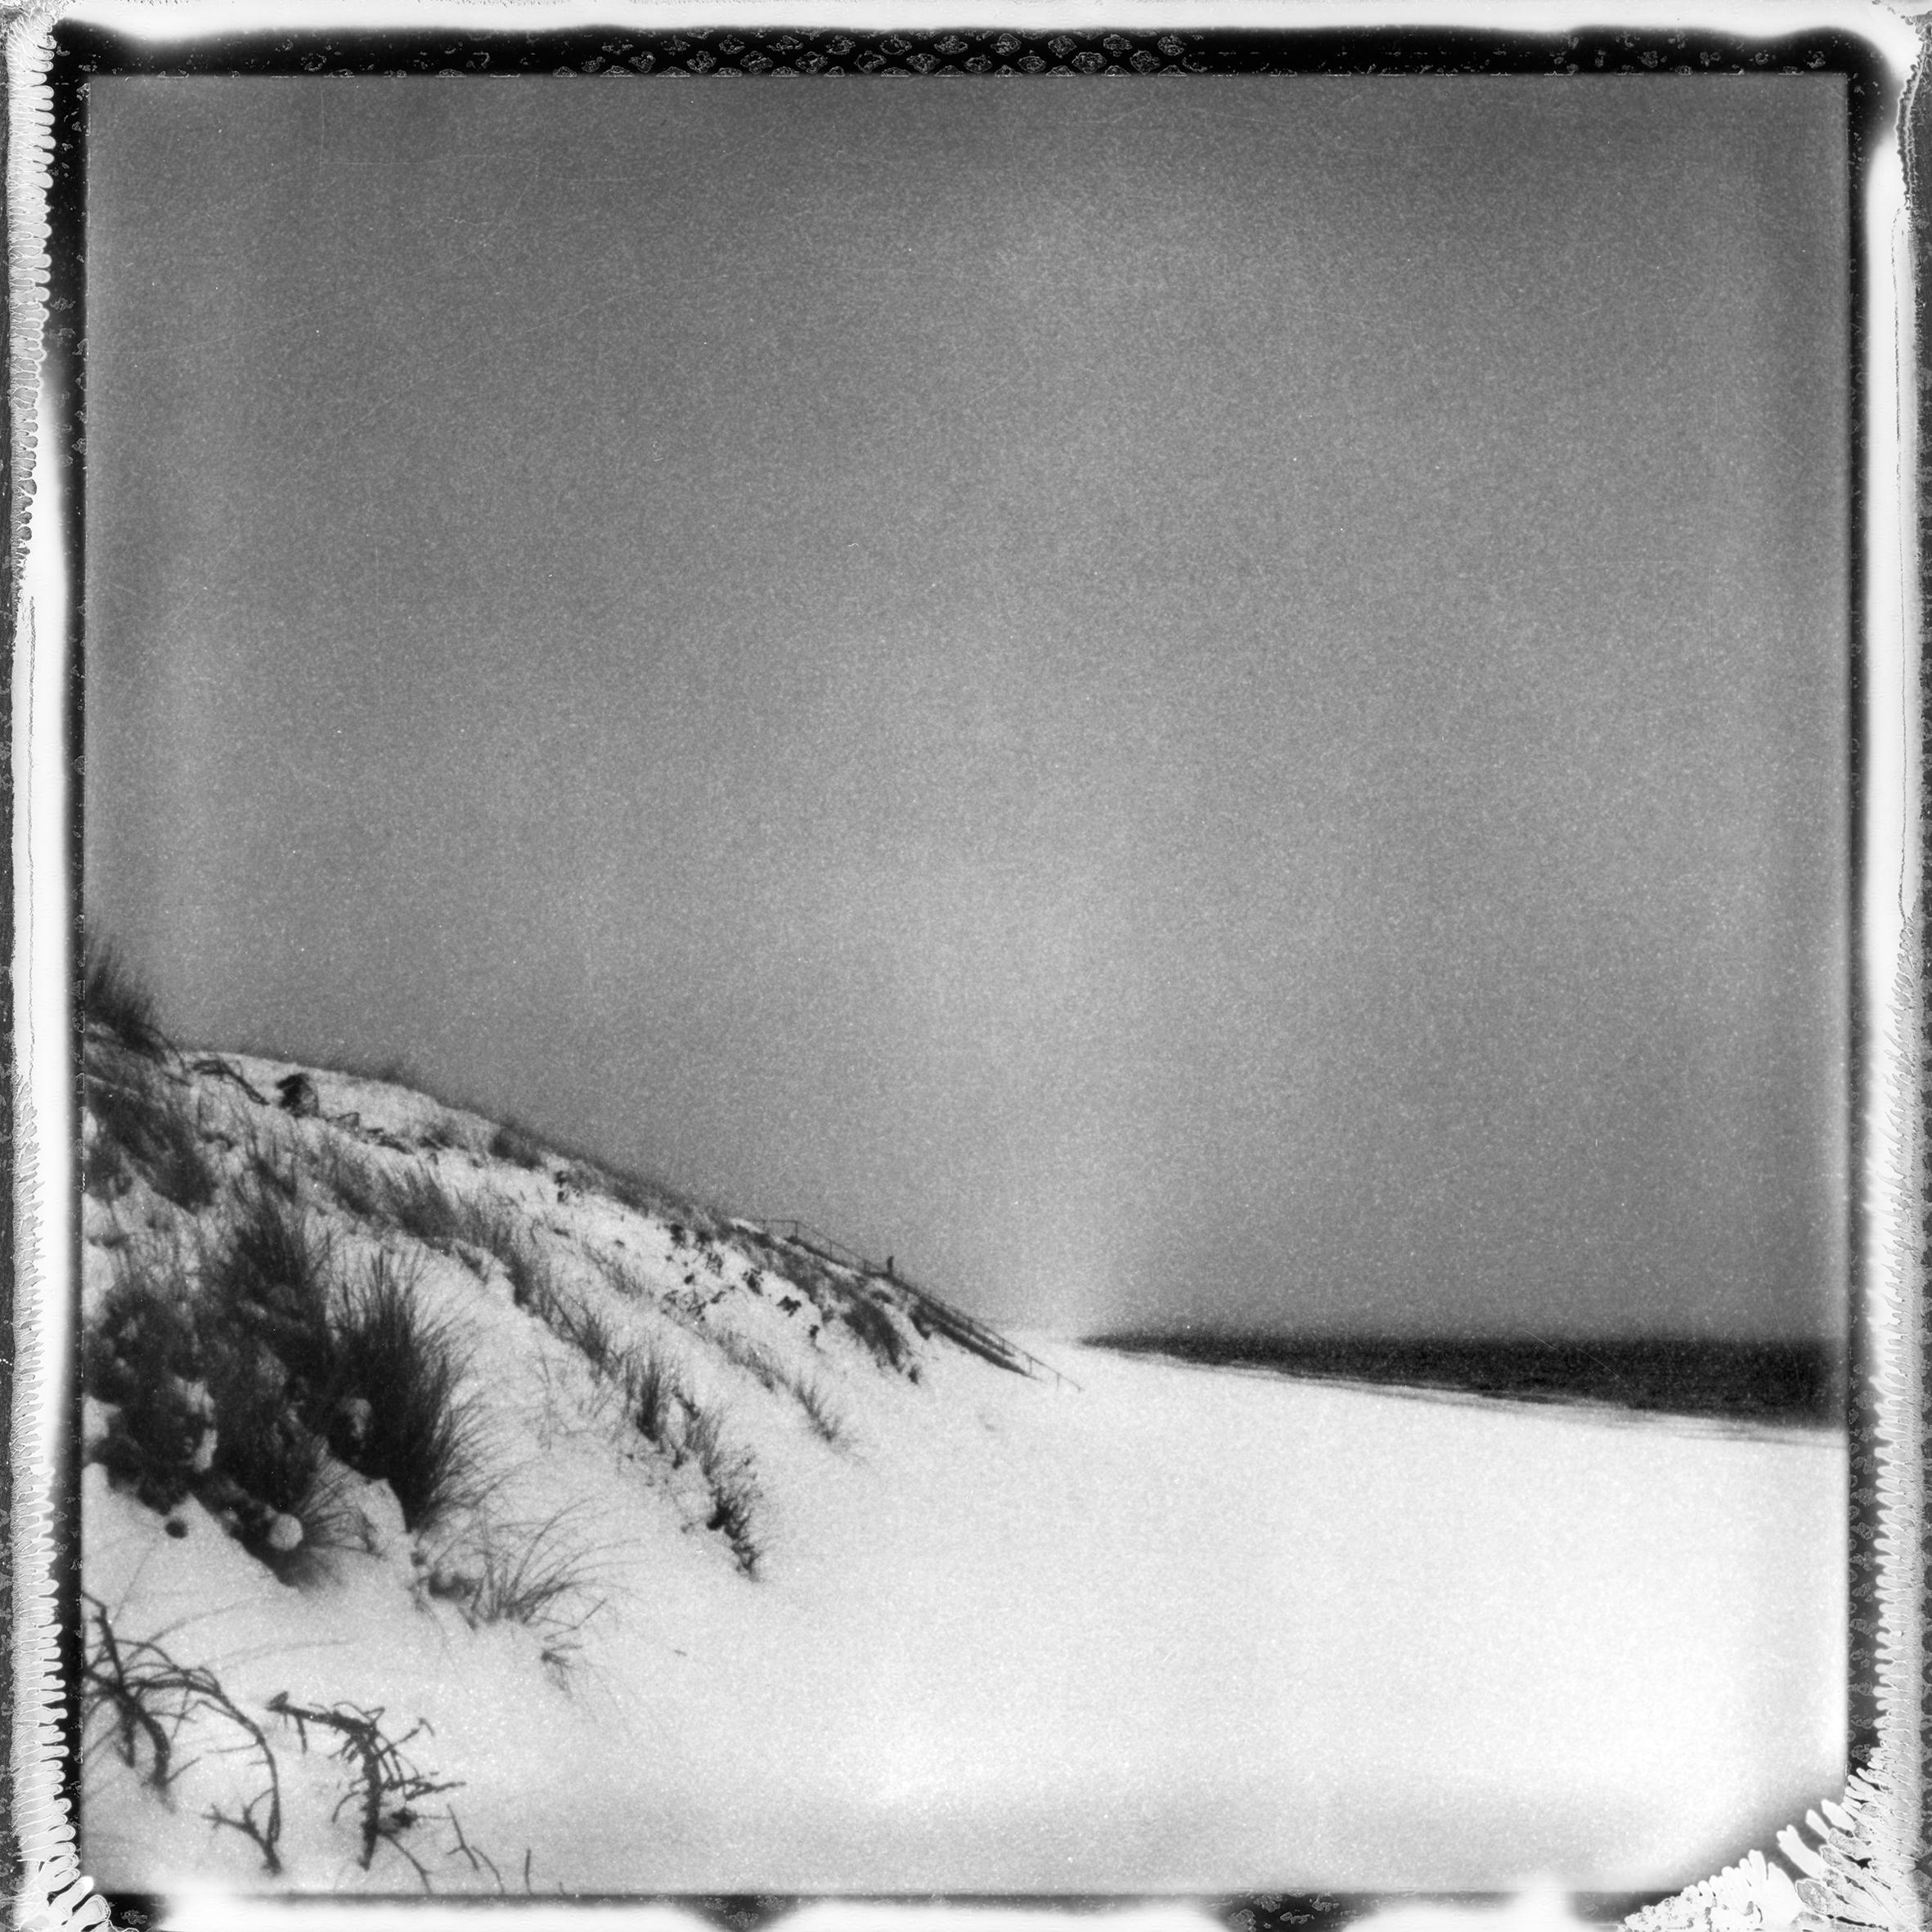 Ugne Pouwell Landscape Photograph – „Frozen beach #2“ – Schwarz-Weiß- analoge Landschaftsfotografie in Schwarz-Weiß